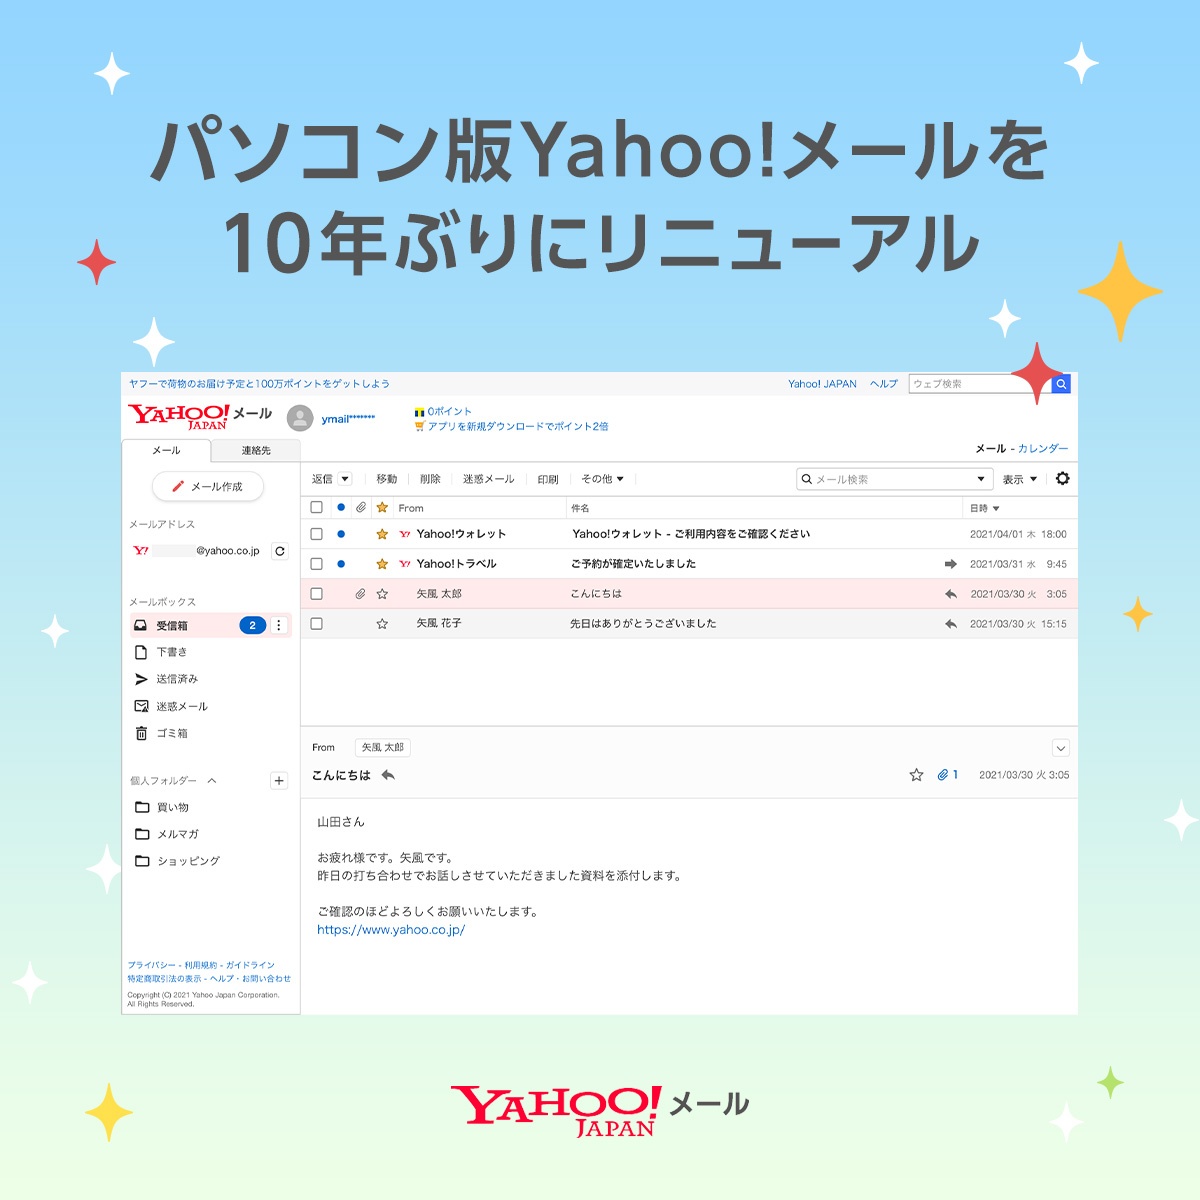 Yahoo メール パソコン版yahoo メール 10年ぶりの全面リニューアル スマートフォン版と統一したデザインで より見やすくなりました またキャラクターきせかえテーマ第一弾 ハローキティ けろけろけろっぴの提供を開始しました 詳細 T